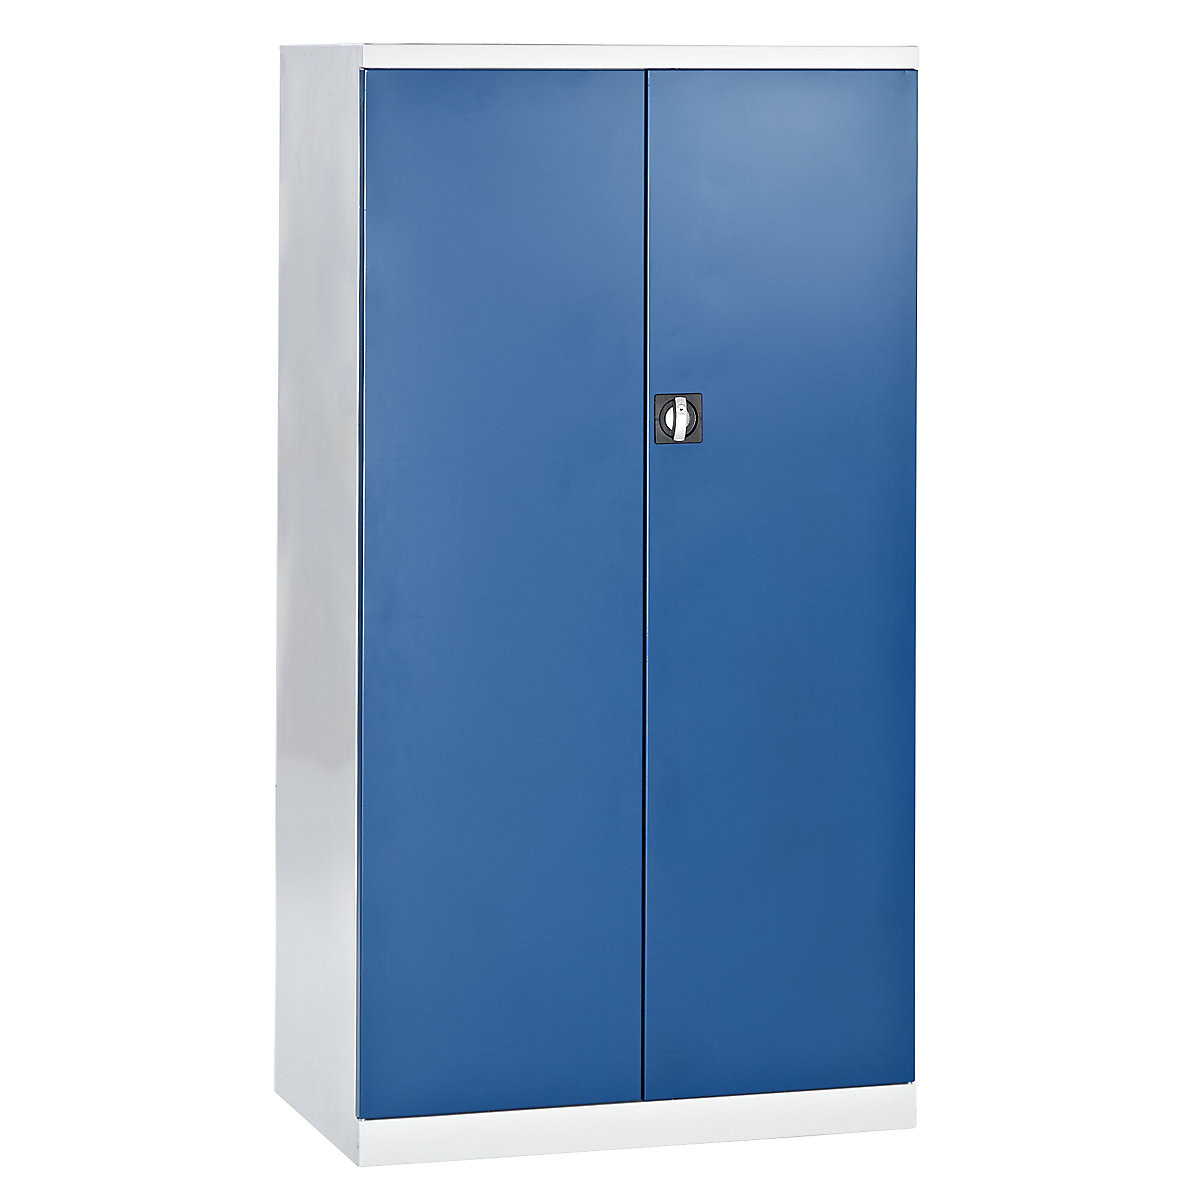 Leeg kastframe gereedschapskast, binnenkanten van de deuren met perforatieplaten, deuren blauw-6